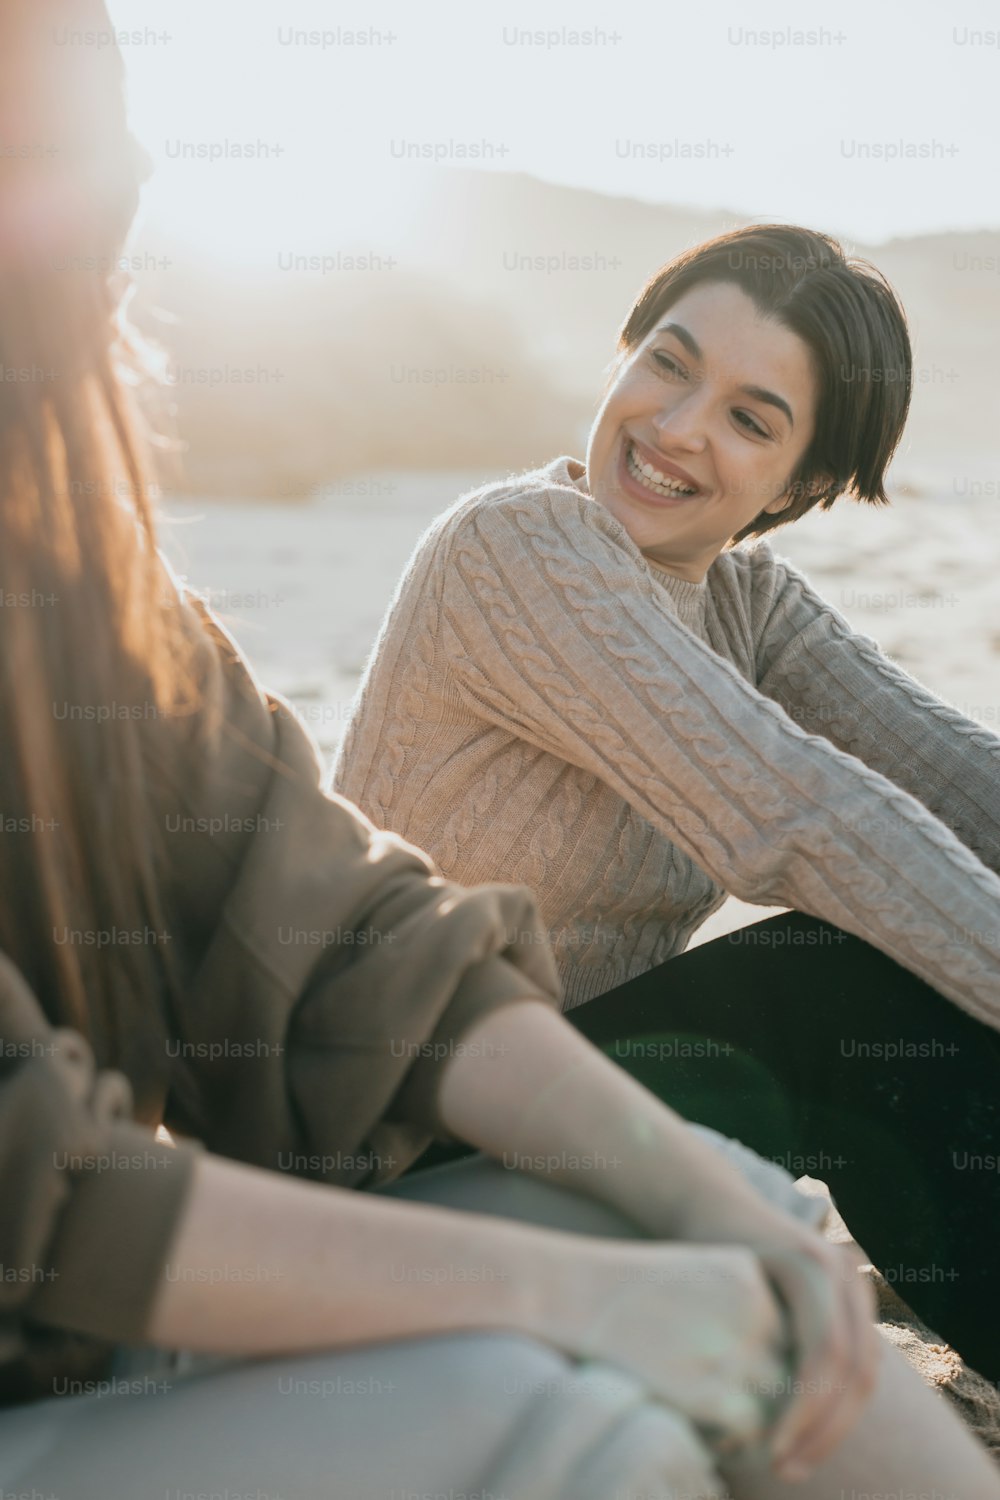 해변에 나란히 앉아 있는 두 명의 여성